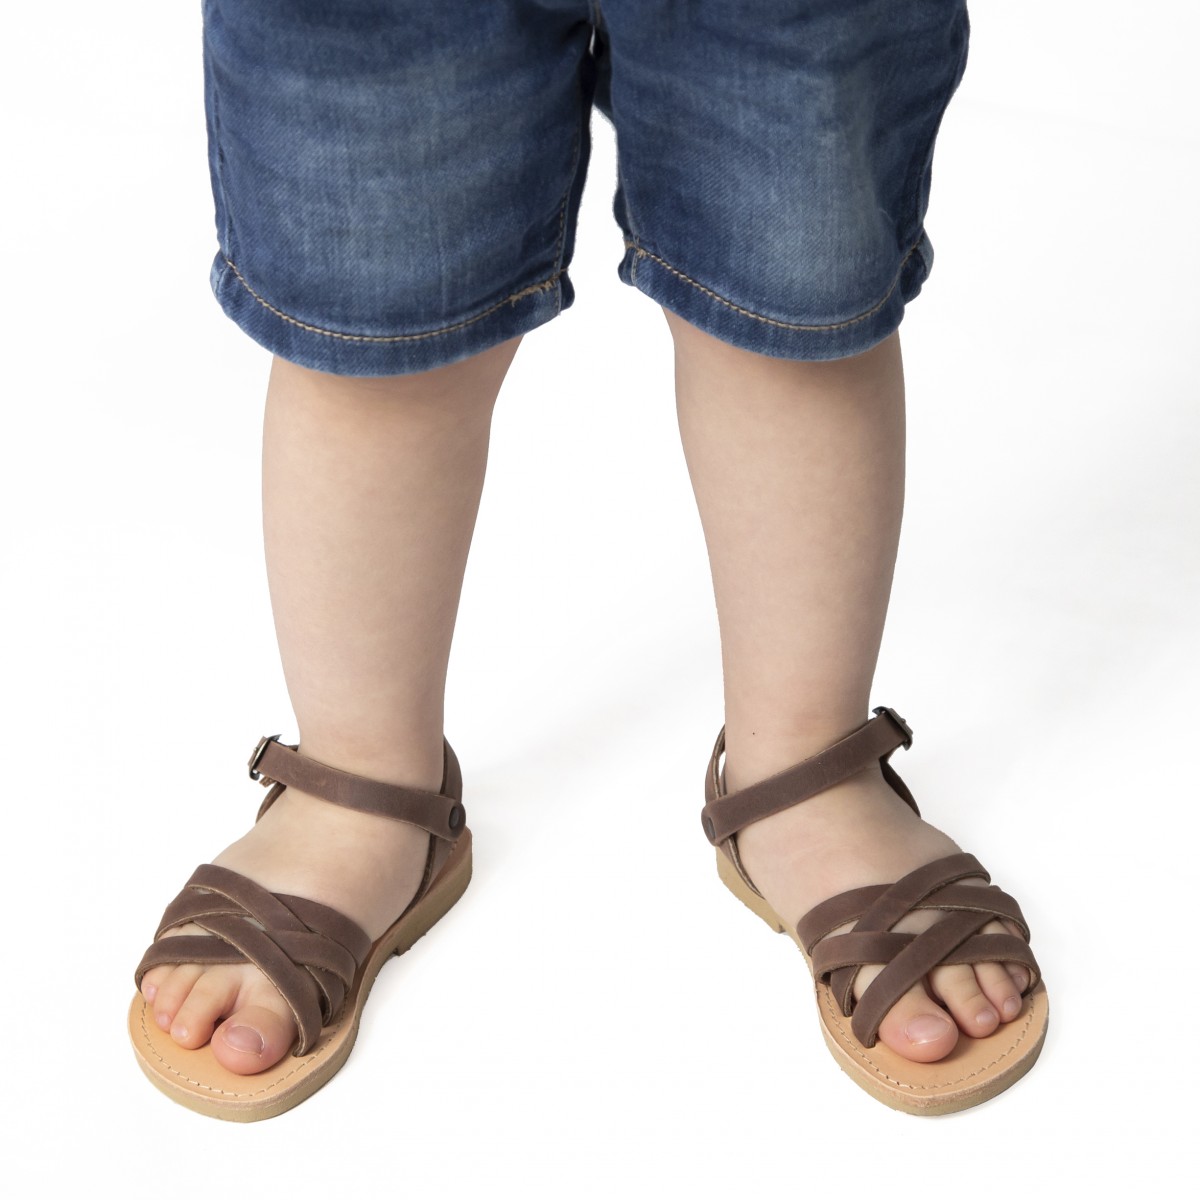 Attica sandals Scarpe Calzature bambino Sandali Sandali intrecciati gladiatore da bambino in pelle nubuck marrone chiusura con fibbia 